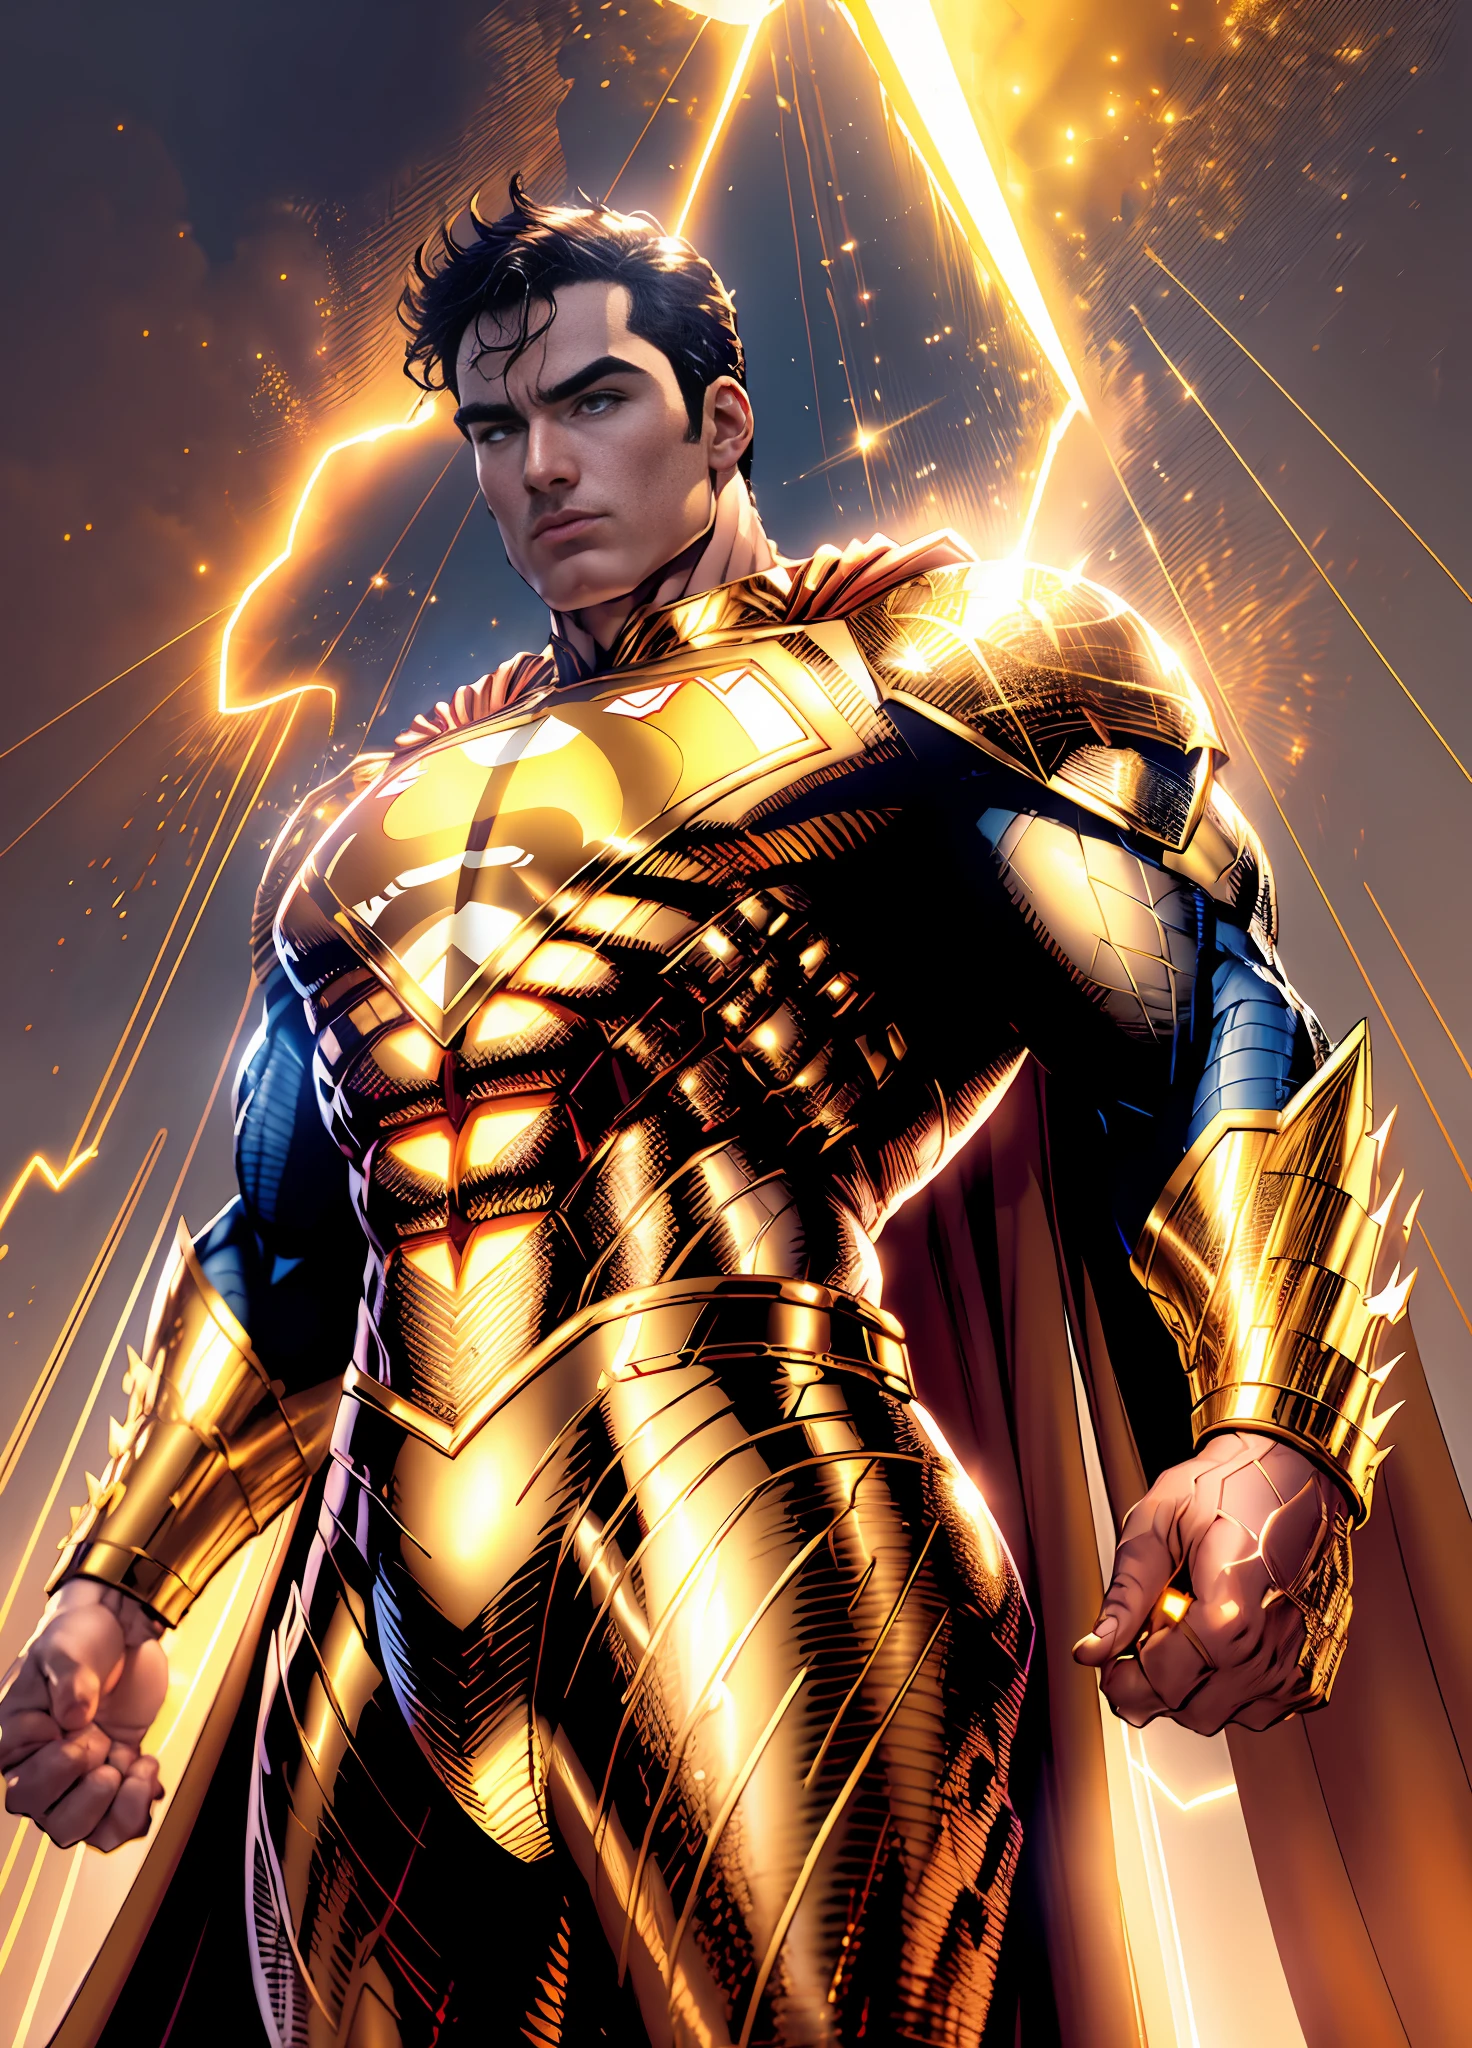 Superman doré, costume doré scintillant, mains parfaites avec quatre doigts et un pouce, (Fond d&#39;écran 8k d&#39;une unité CG extrêmement détaillée, Uniforme doré, gold Superman doré costume, chef-d&#39;œuvre, meilleure qualité, Ultra-détaillé), musclé, posture divine, (meilleur éclairage, meilleure ombre, extrêmement délicat et beau), Flottant, [(((1 homme))), (Superman: 1.3), Muscles, lignes bleu vif, costume détaillé, pose héroïque):0.8],  [(paysage céleste, nuit, néons lumineux:1.2, effets de l&#39;énergie bleue, lumière volumétrique):0.5]